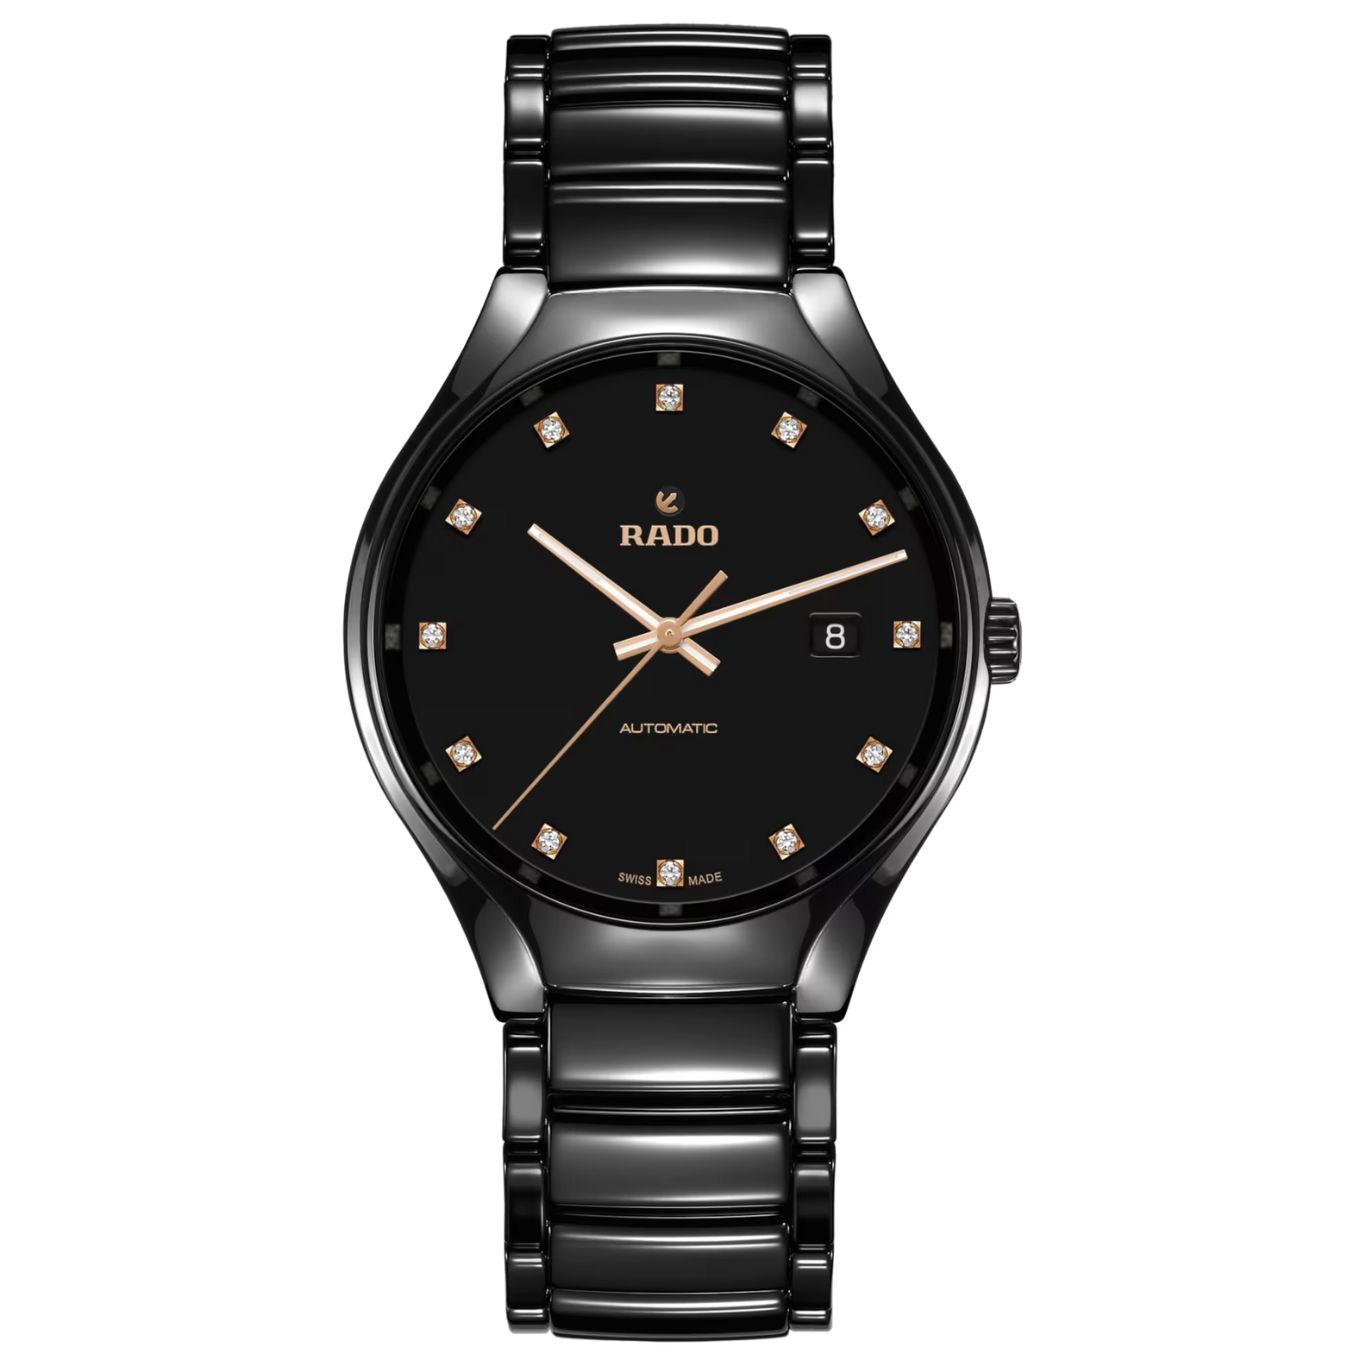 Rado True watch collection